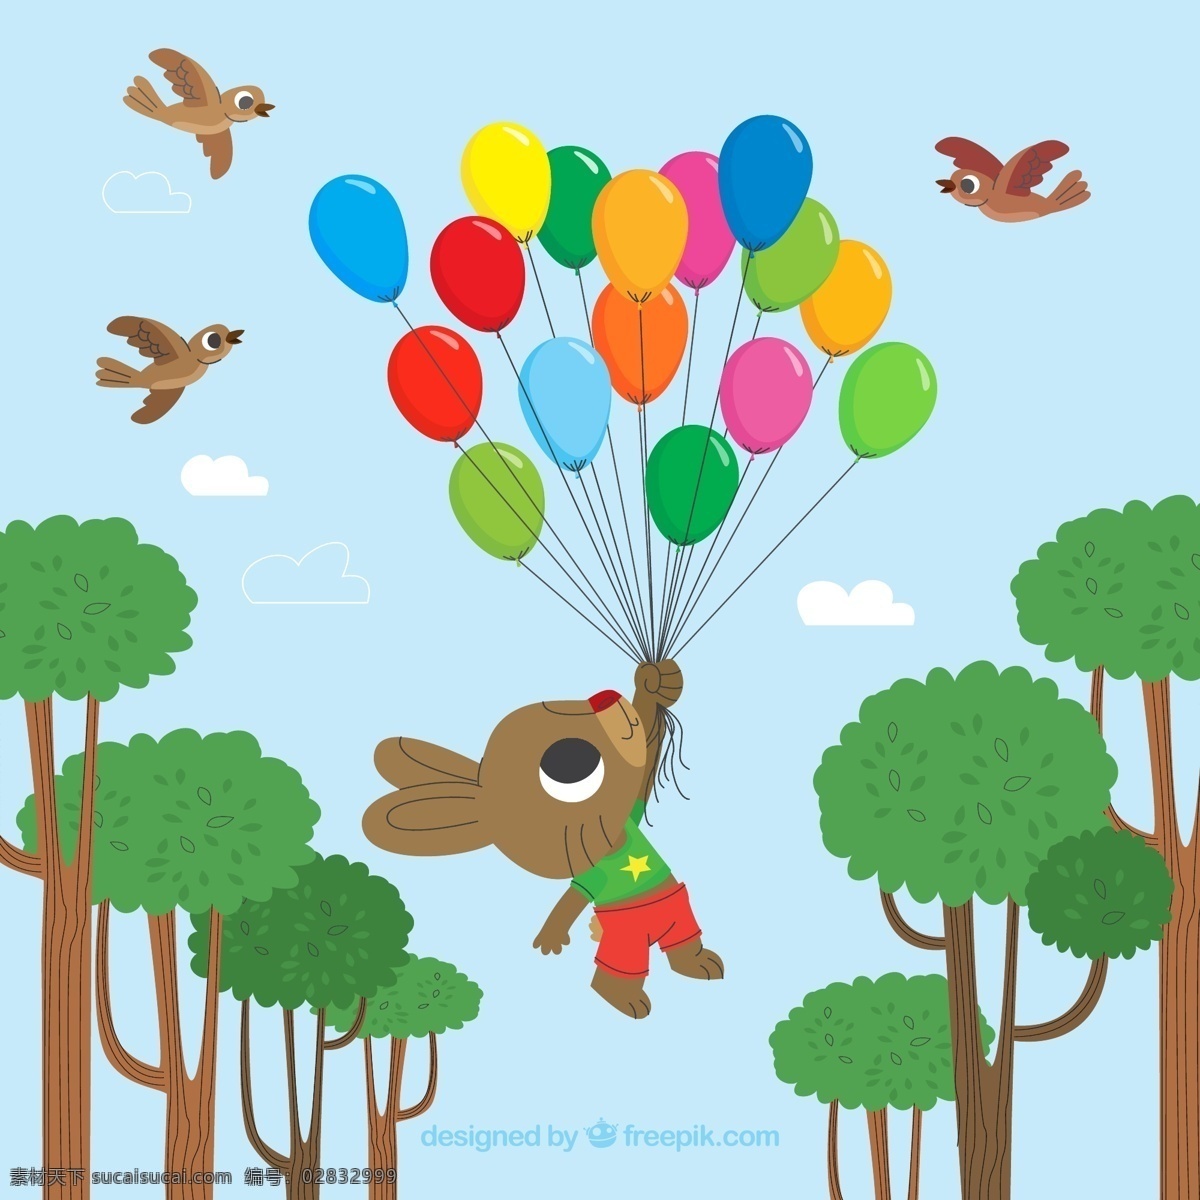 可爱 兔子 气球 束 气球束 树木 云朵 鸟 动物 生物世界 野生动物